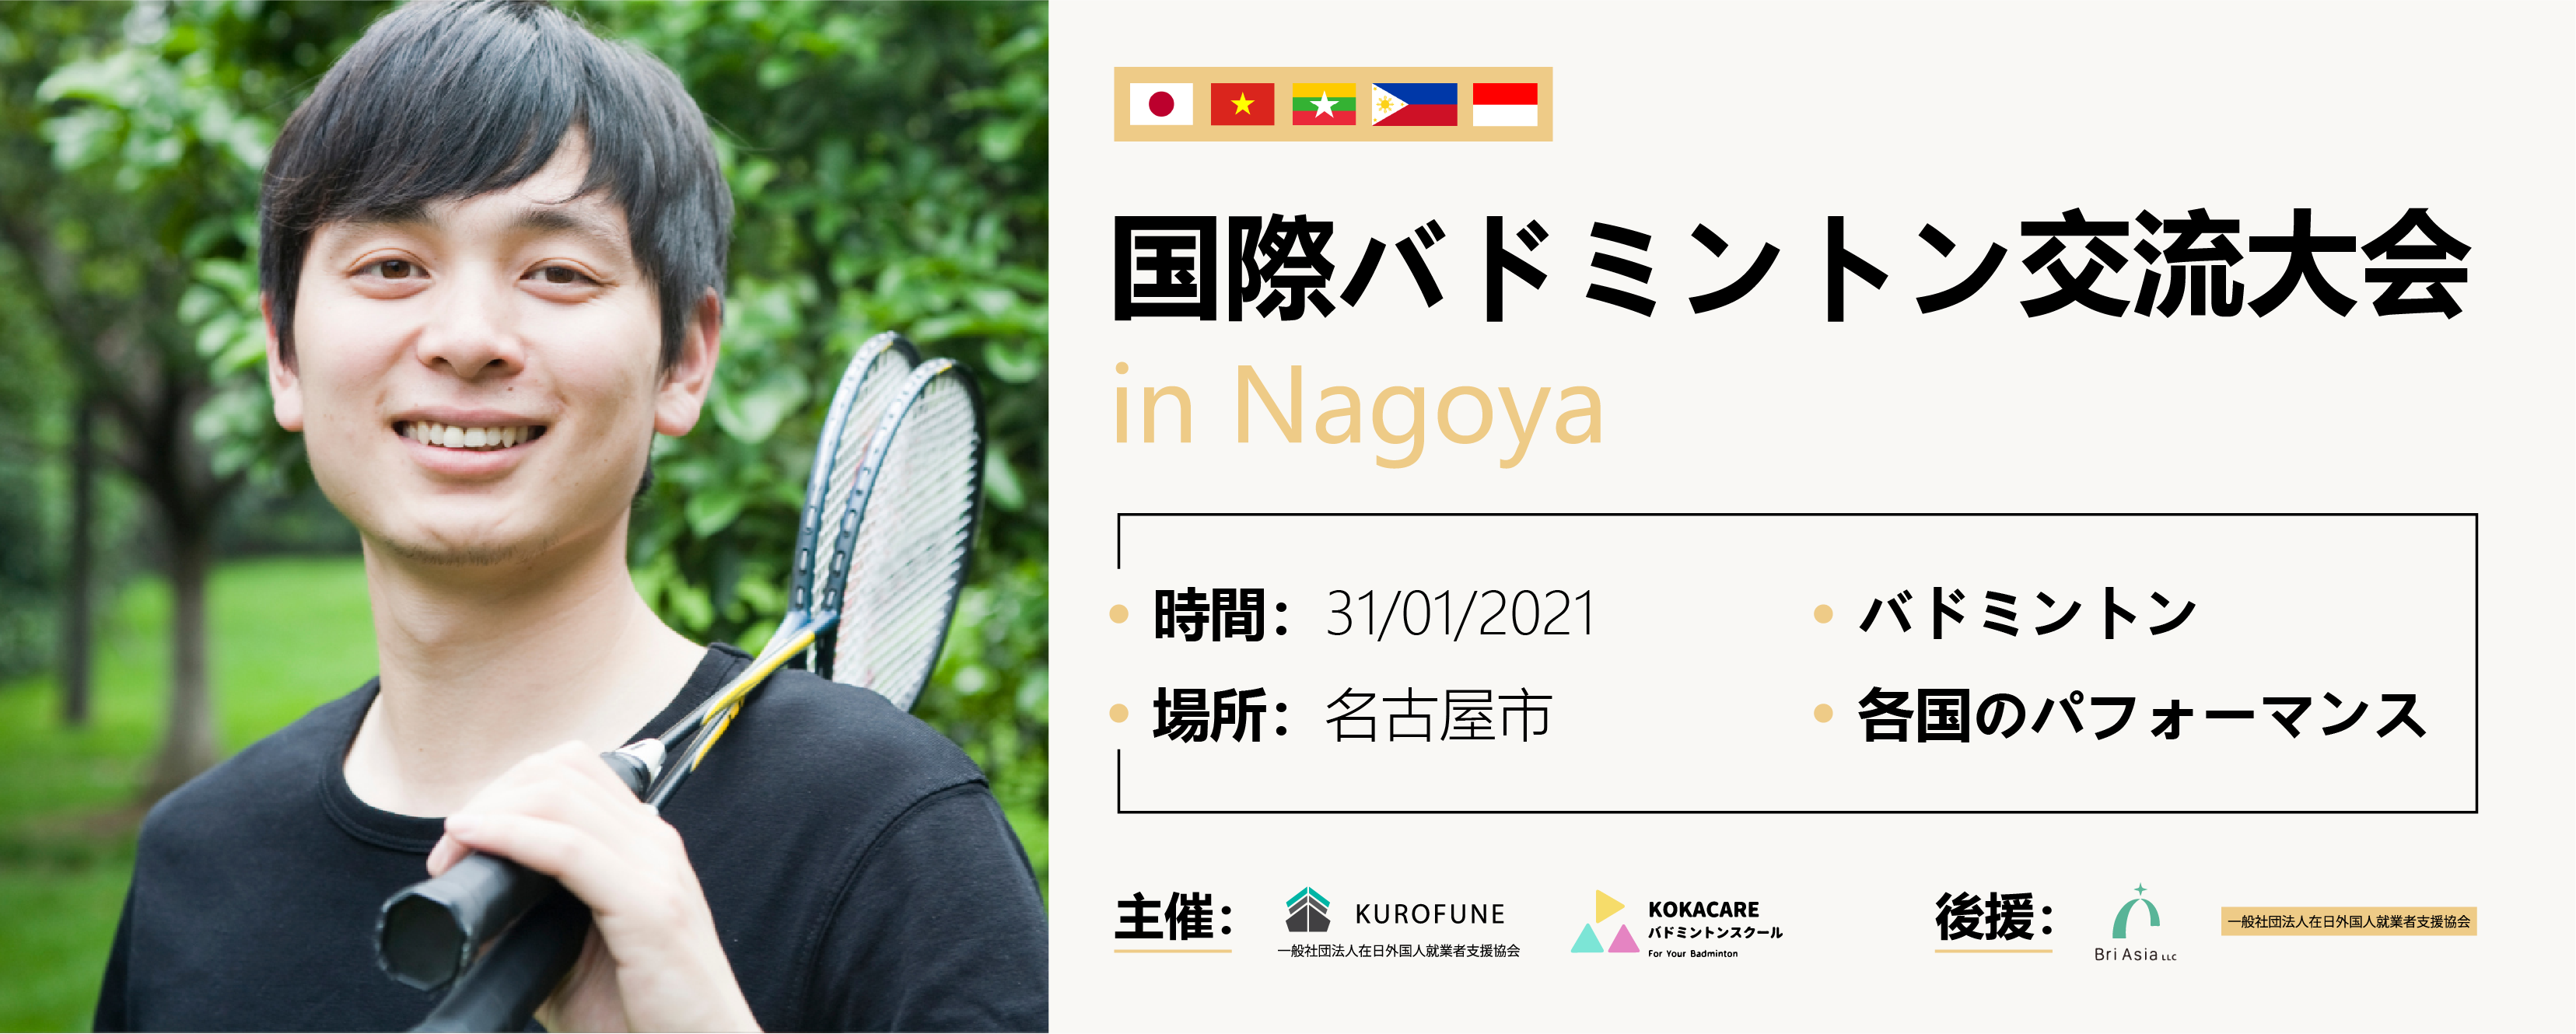 「国際バドミントン交流大会 in NAGOYA」・名古屋音楽クラブについて